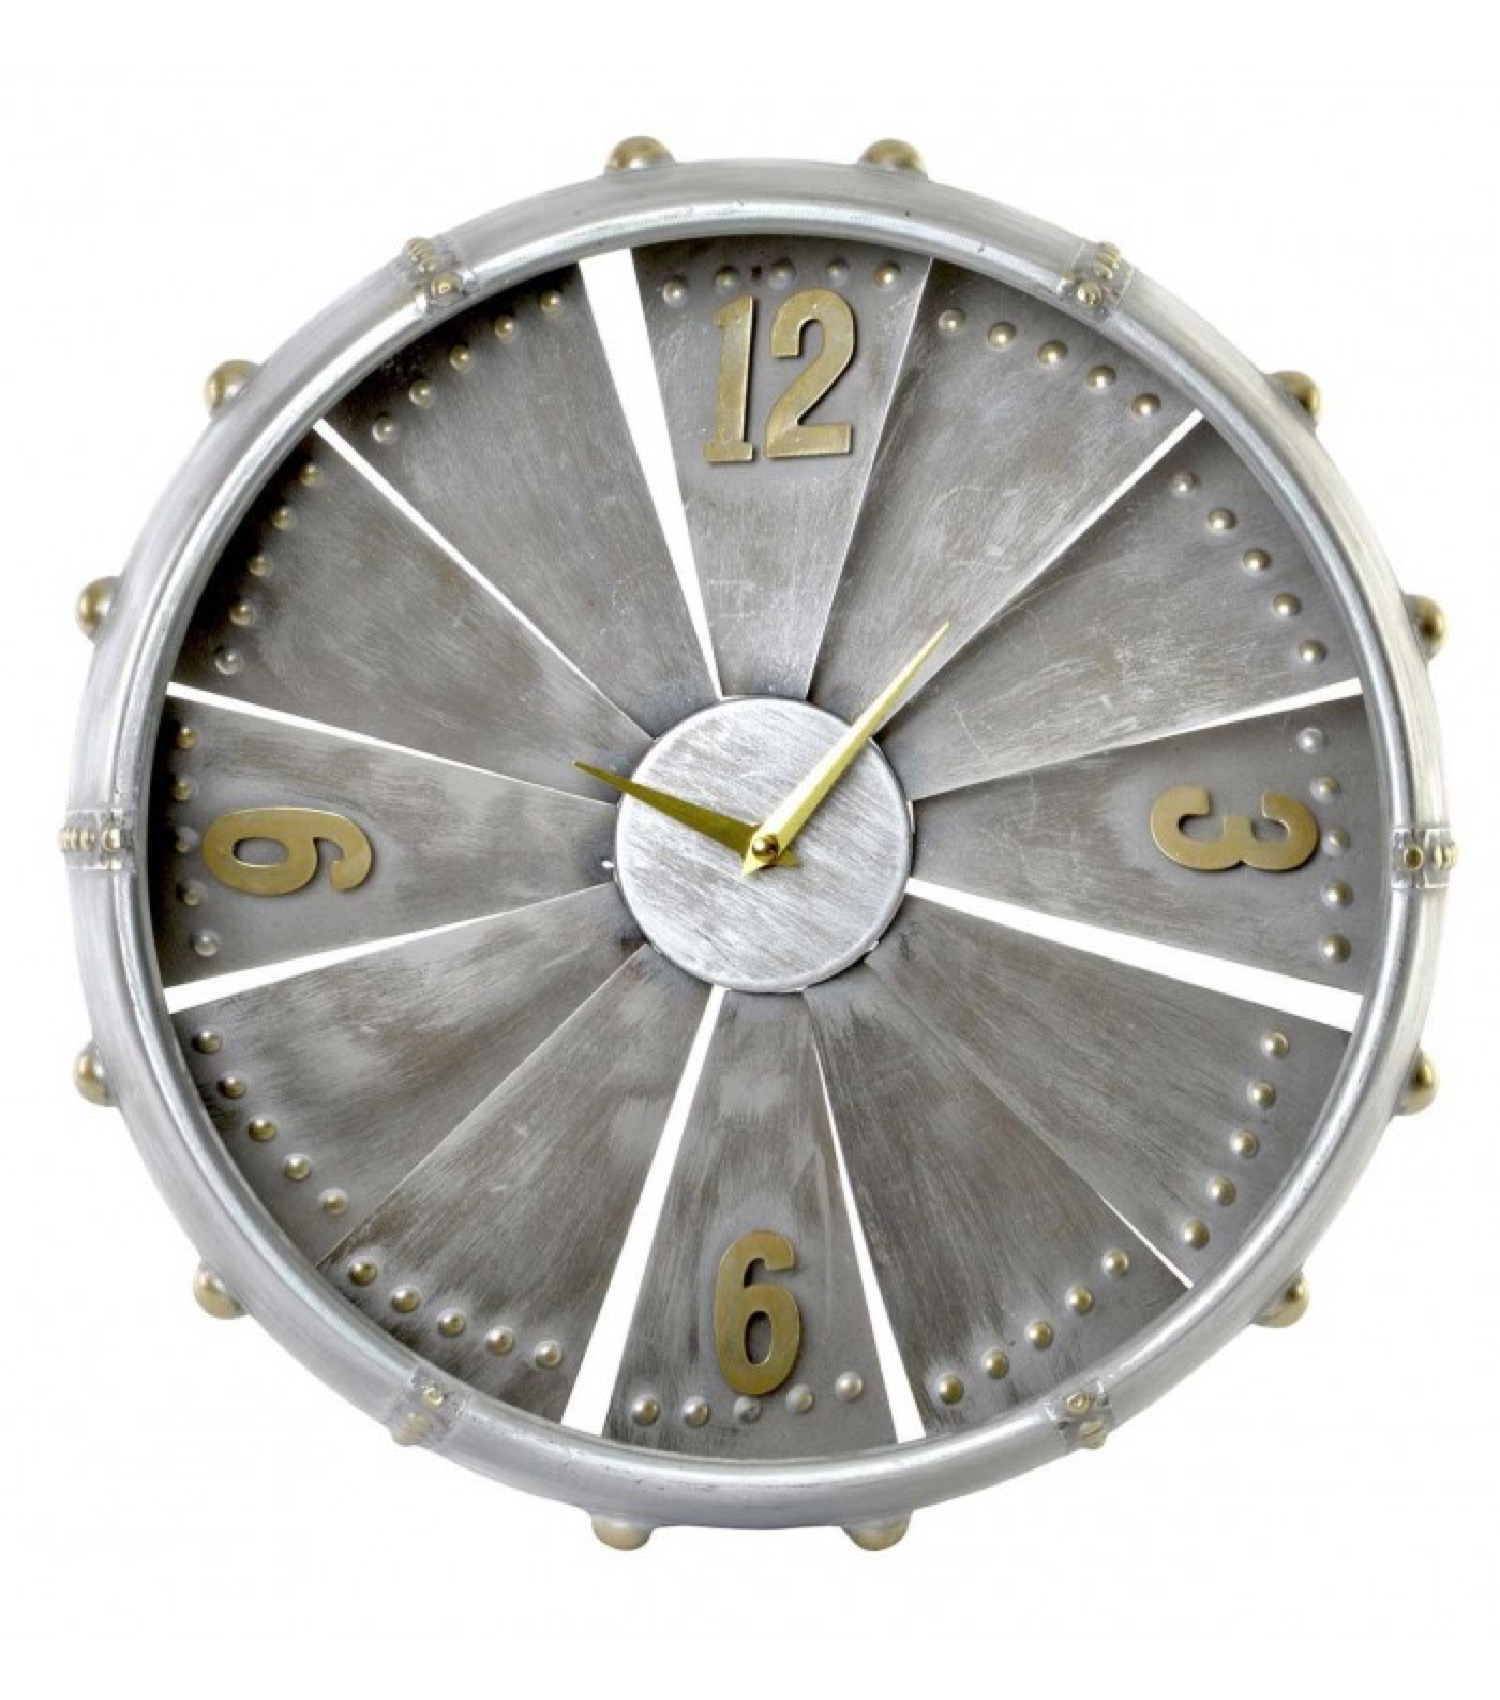 Horloge murale en métal galvanisé gris D41